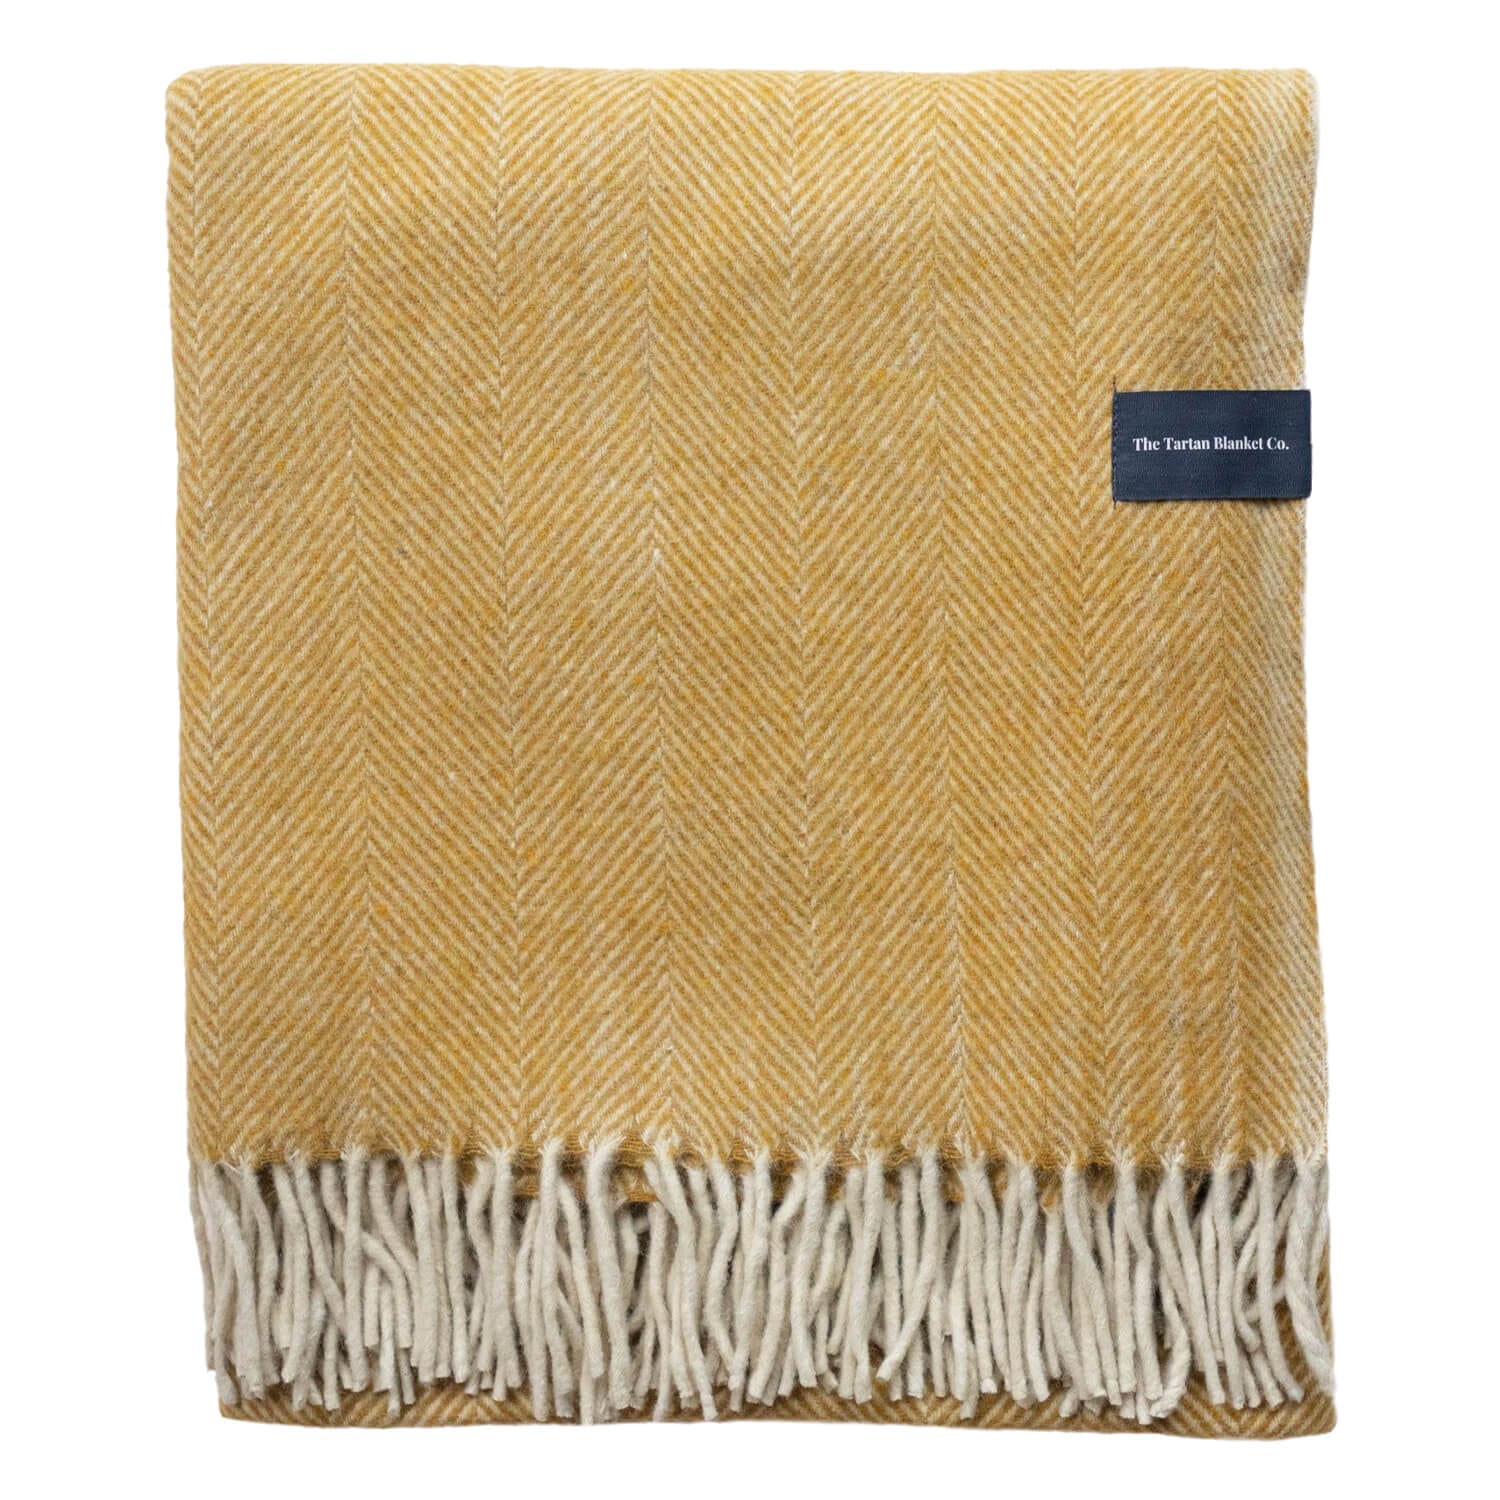 The Tartan Blanket Co Blankets Herringbone Recycled Wool Blanket (various colours)